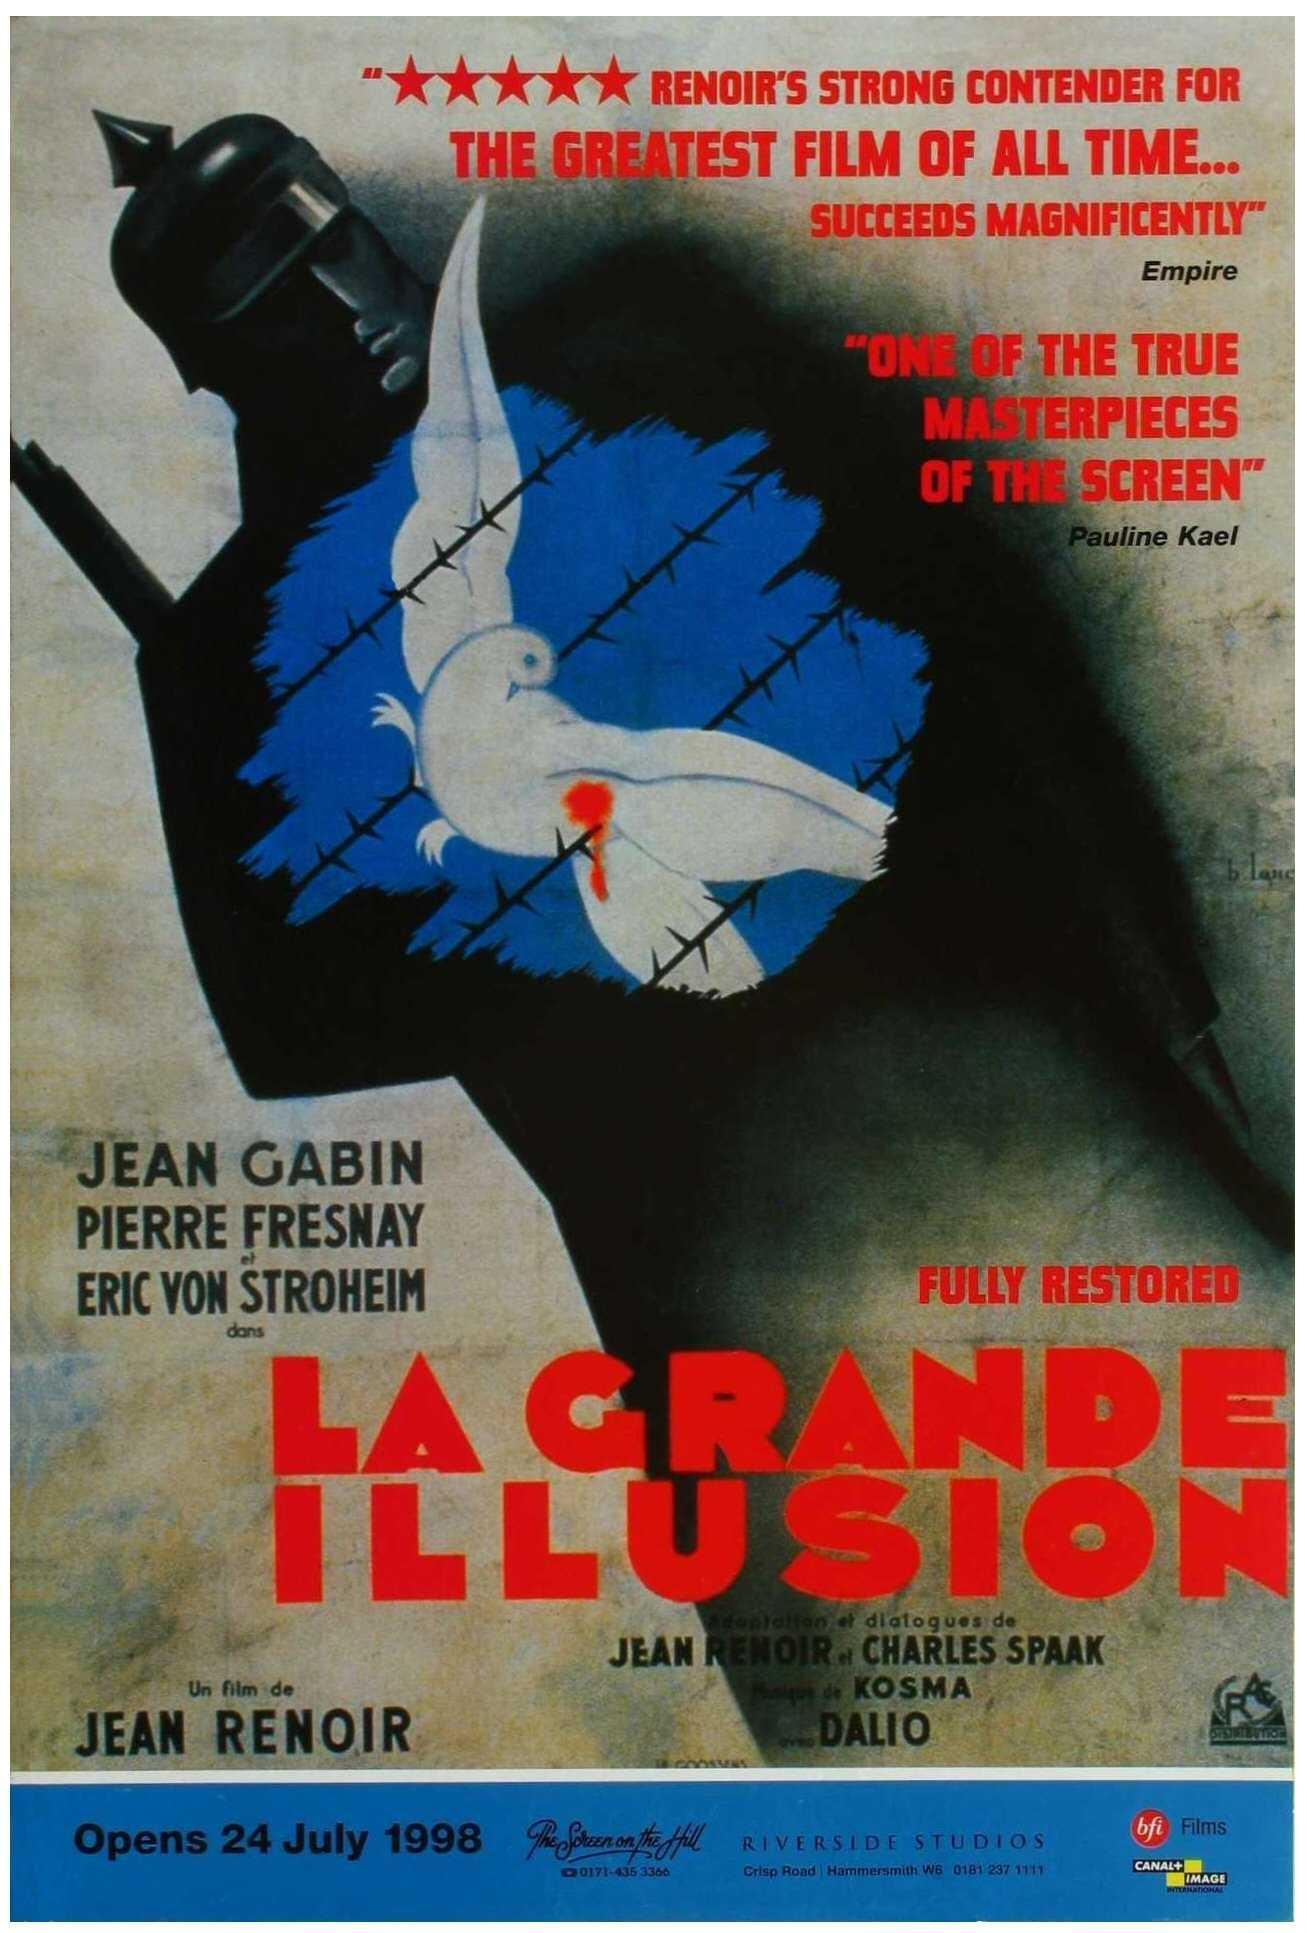 Постер фильма Великая иллюзия | grande illusion